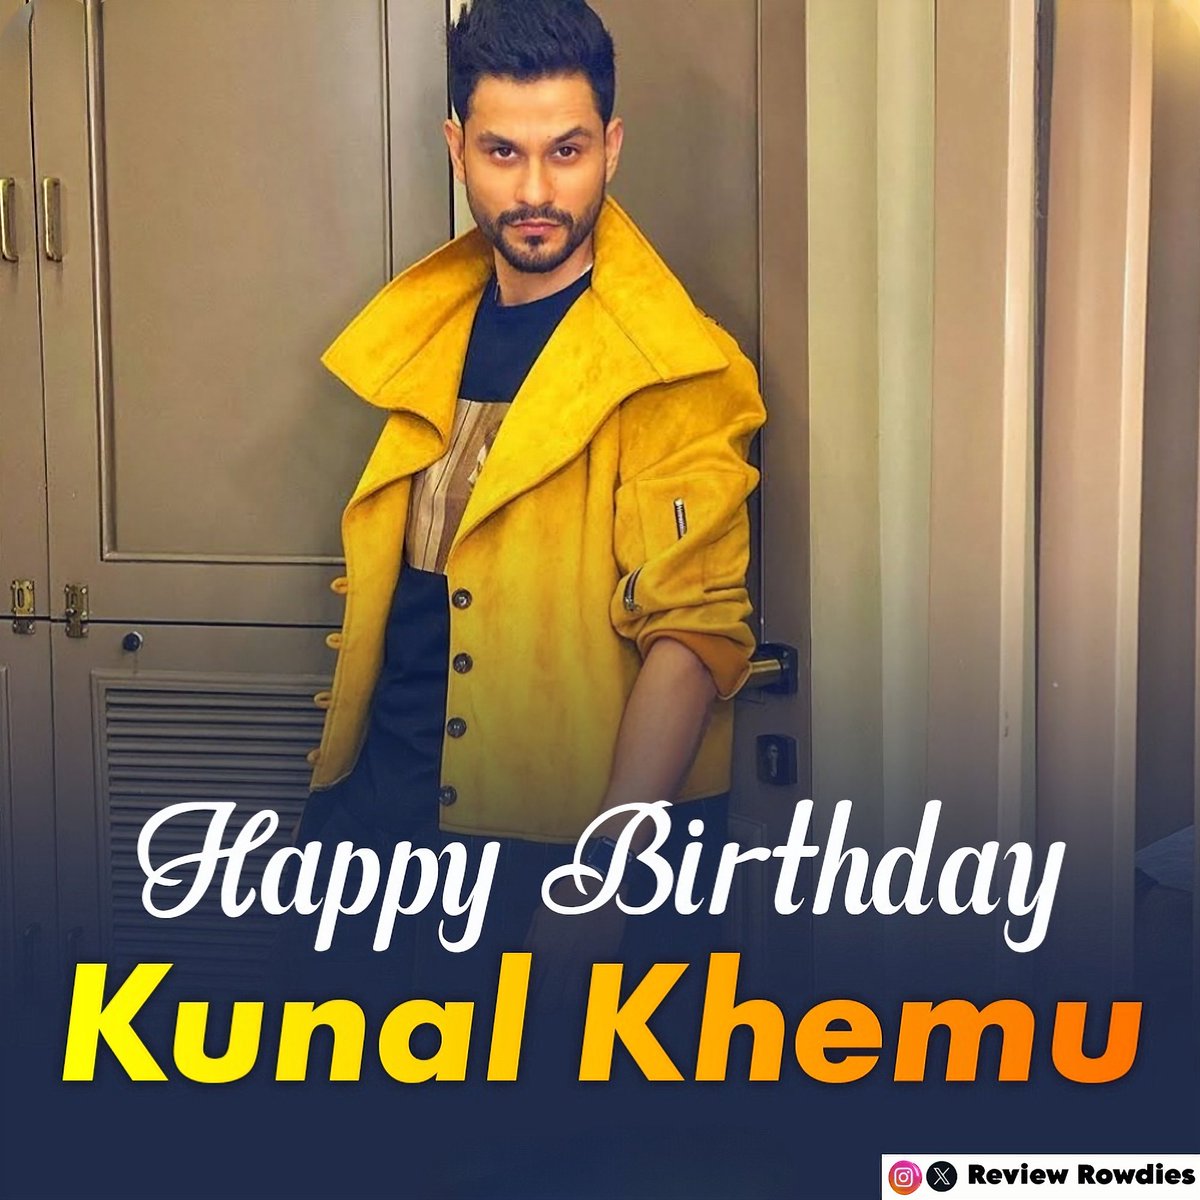 Wishing a very happy birthday to Kunal Khemu 

#KunalKhemu #HappyBirthdayKunalKhemu #KunalKhemmu #Reviewrowdies